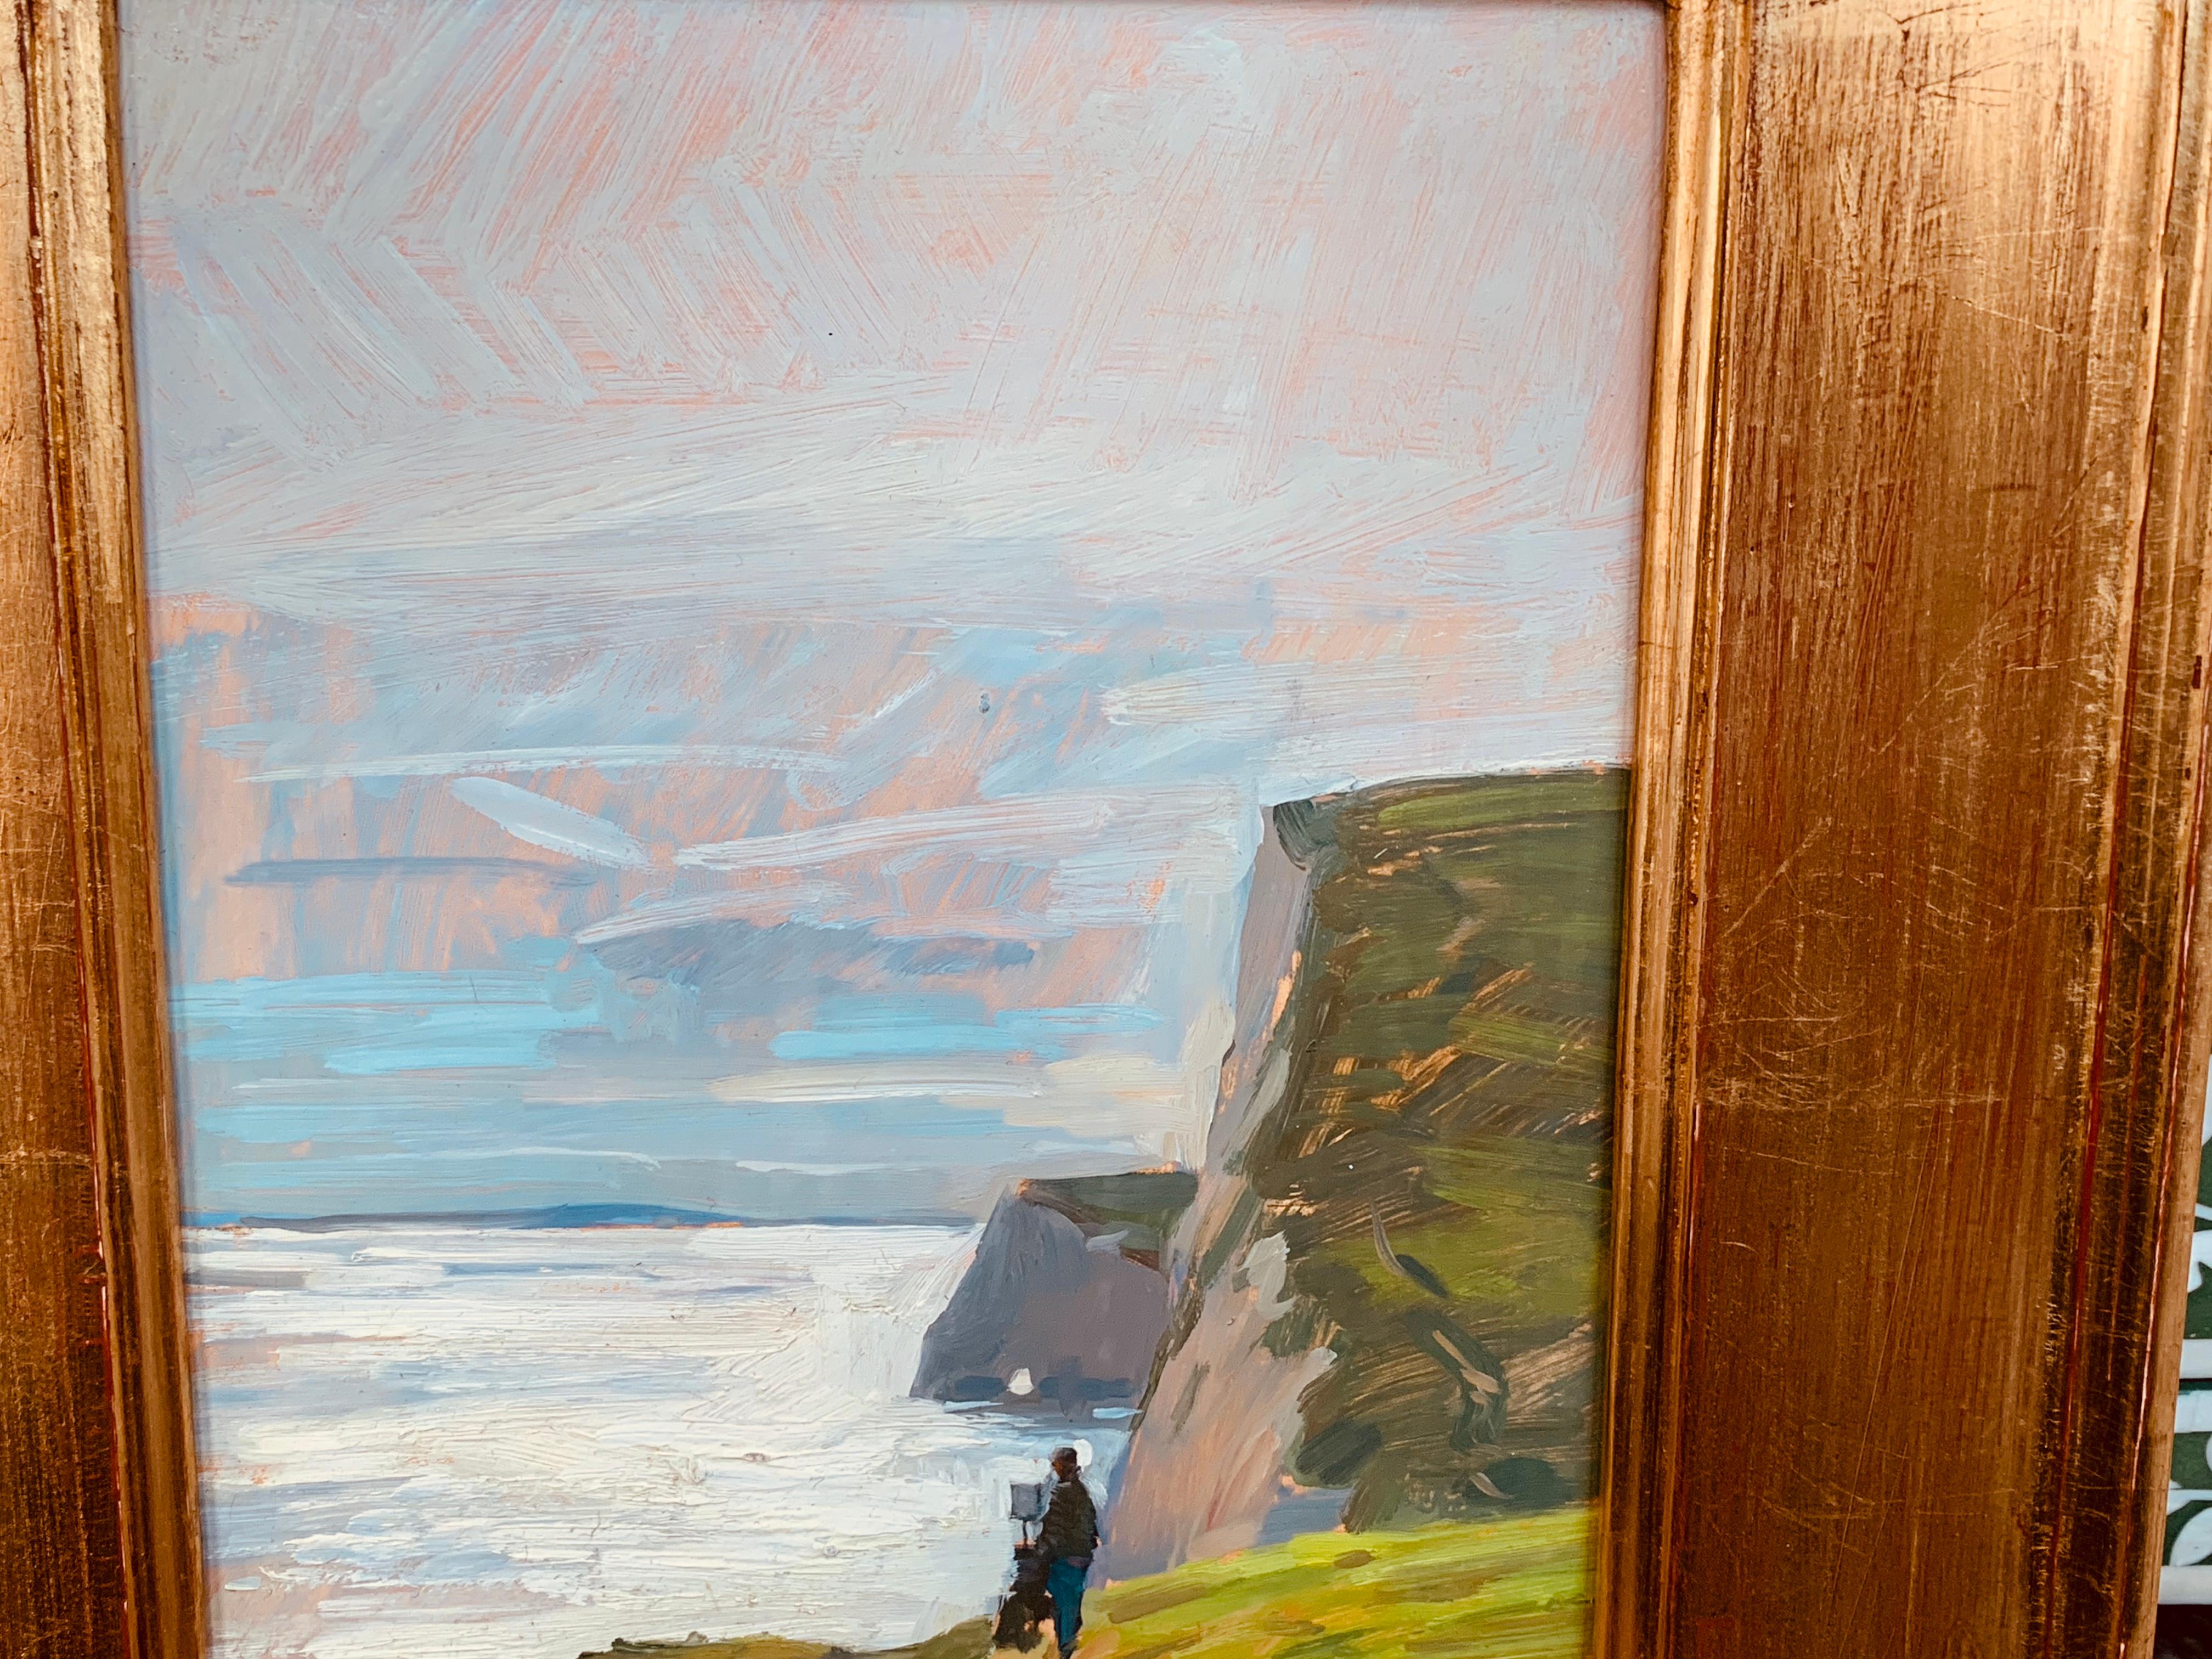 Dalessio malt en plein air an den Klippen Englands und fängt einen Maler ein, der entlang der Klippen malt. 

Marc Dalessio wurde 1972 in Los Angeles, Kalifornien, geboren. Schon in seinen ersten Lebensjahren war klar, dass seine Leidenschaft der